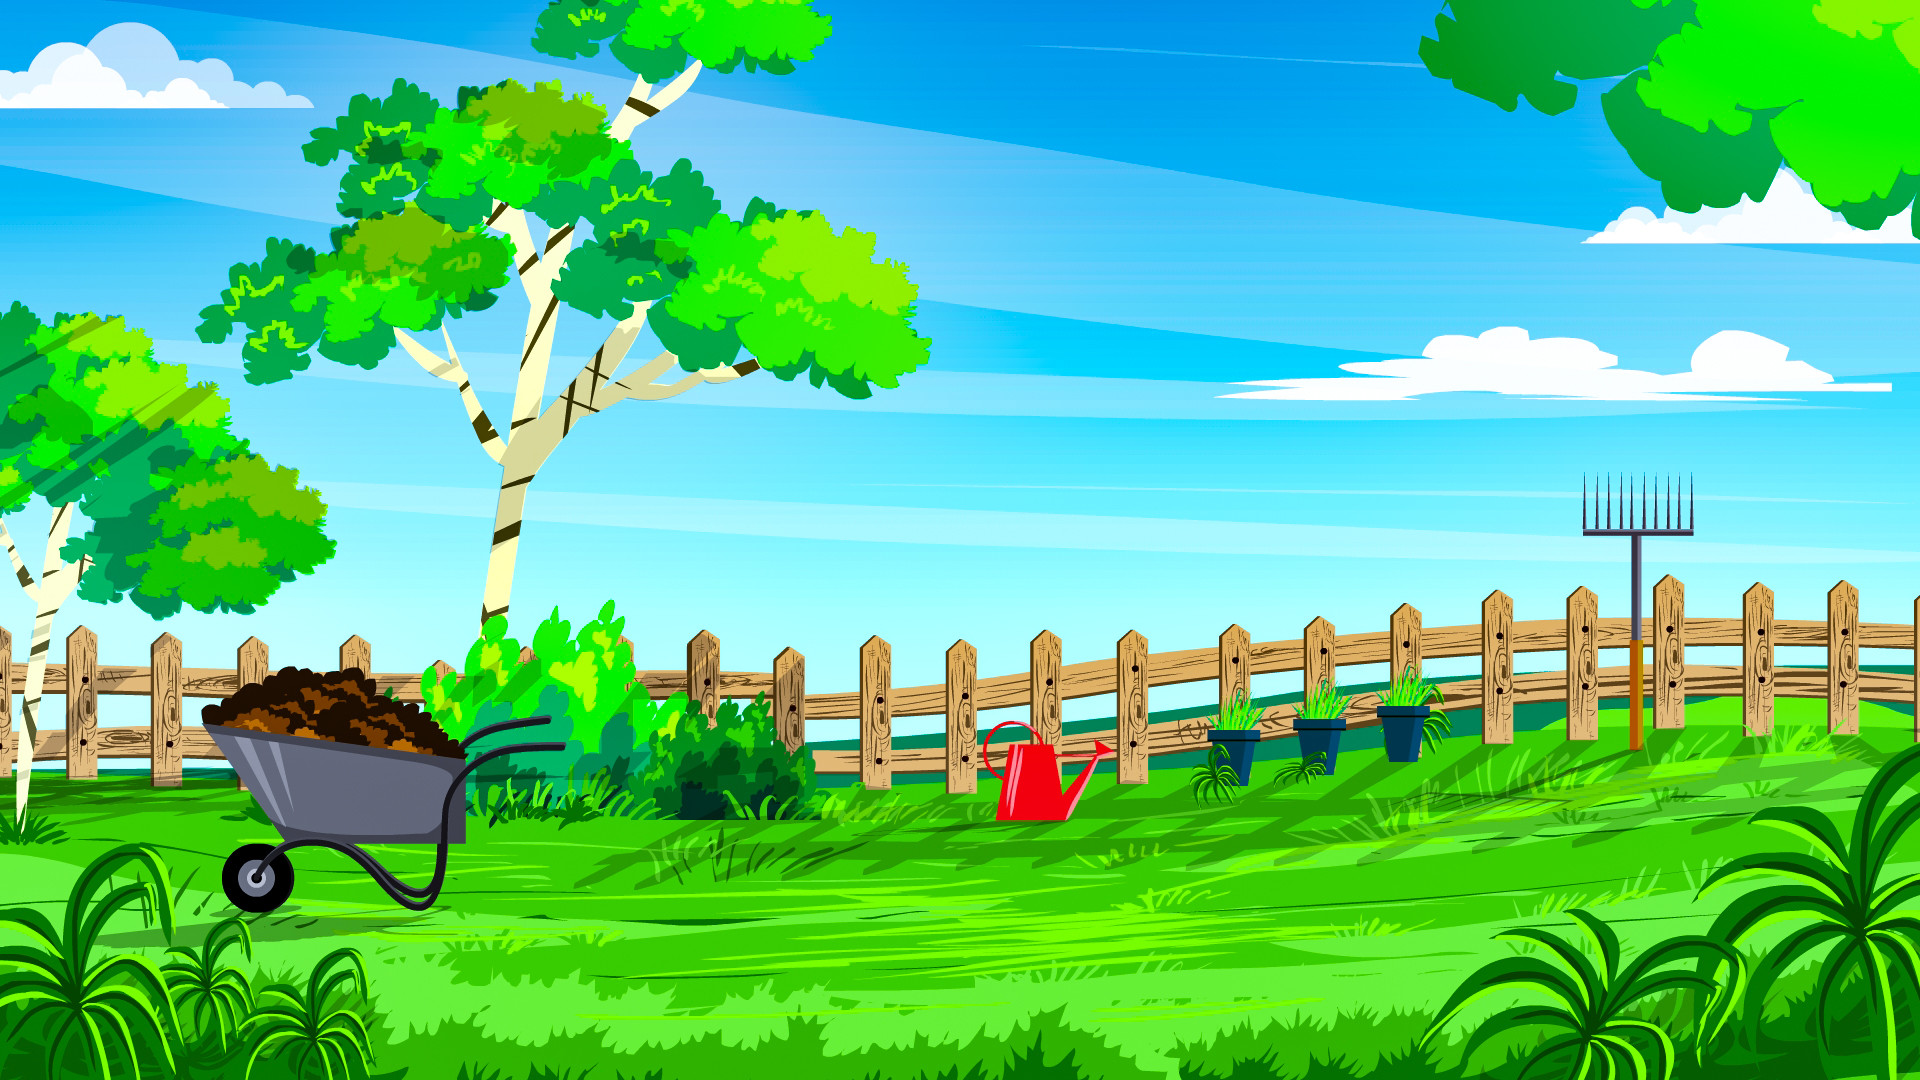 Joshua prakash - 2D animation landscape background